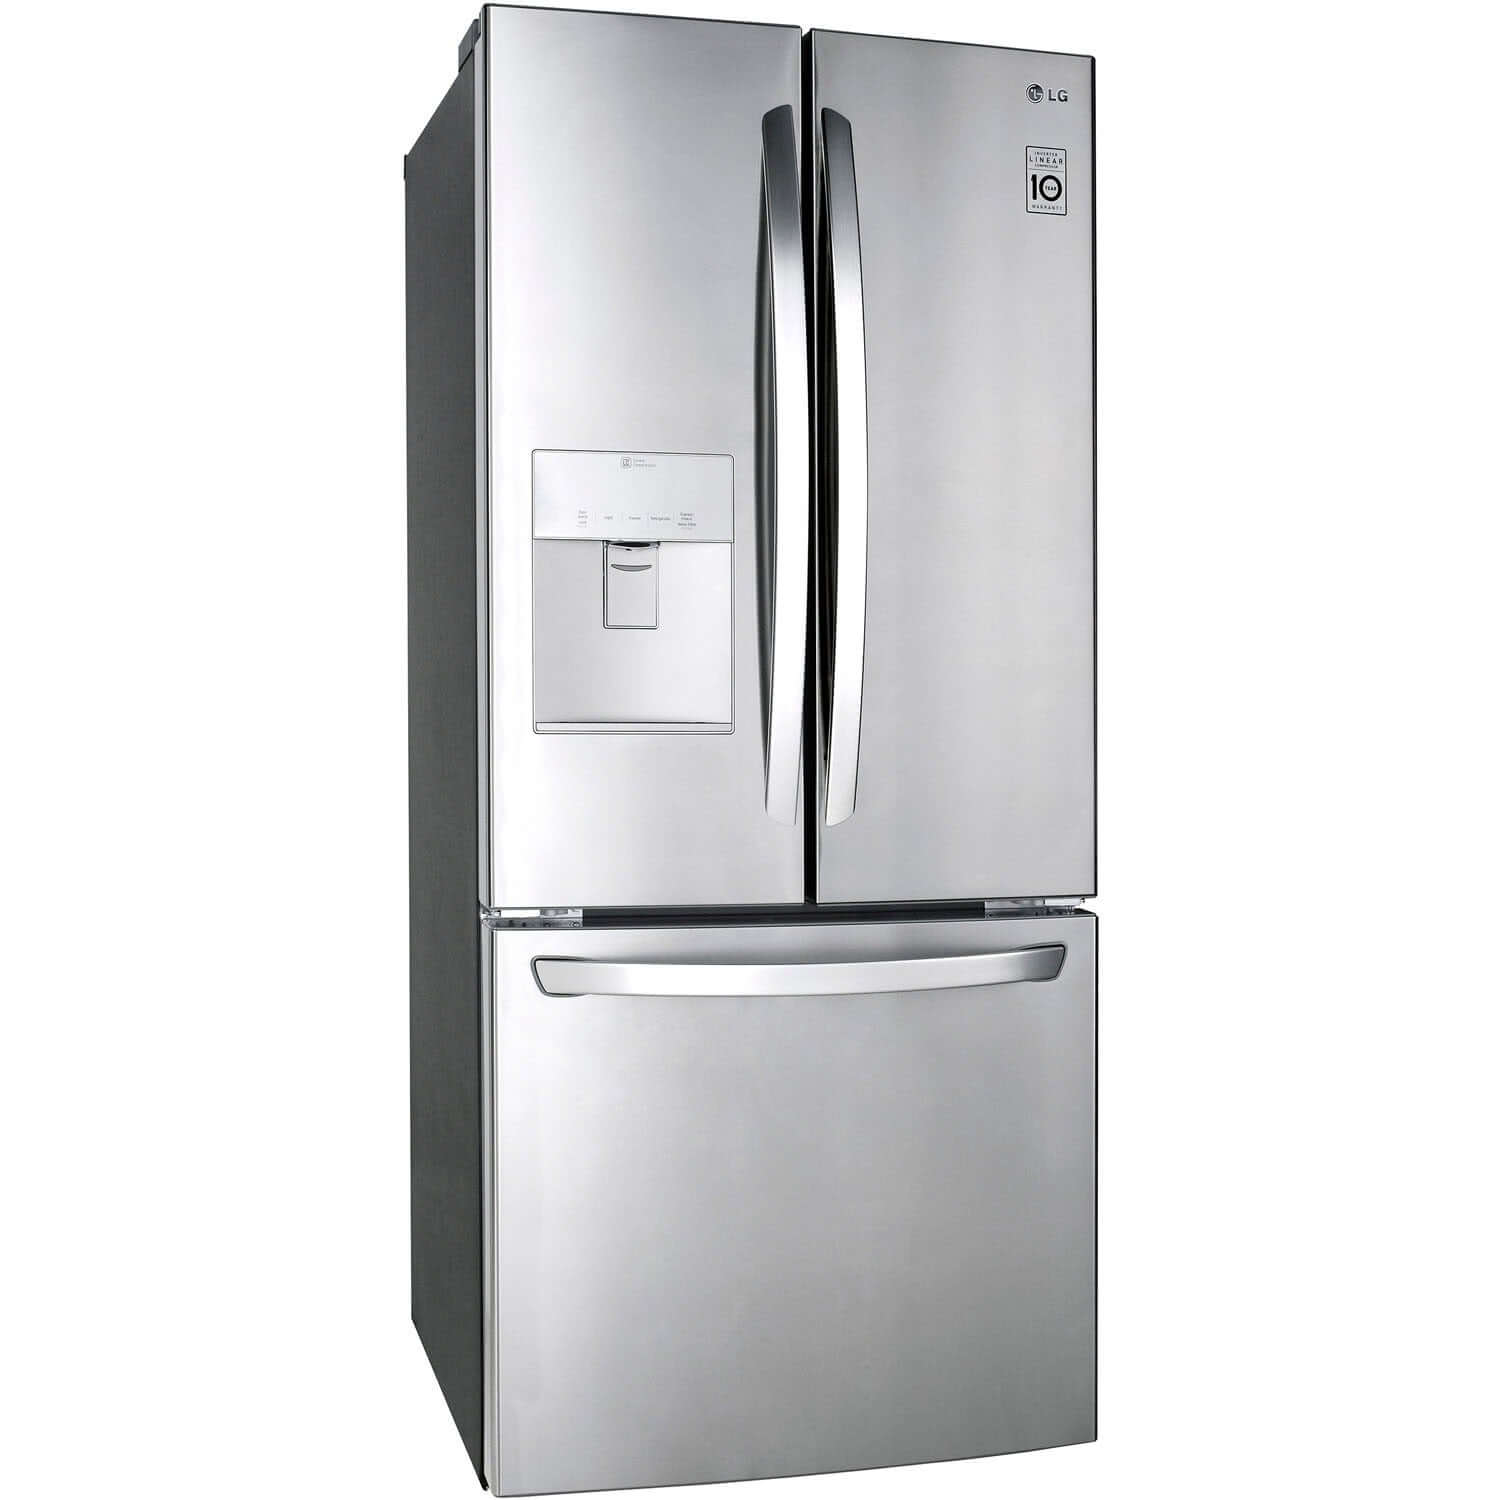 LG 30 Inch 3-Door French Door Refrigerator in Stainless Steel 22 Cu. Ft. (LFDS22520S)